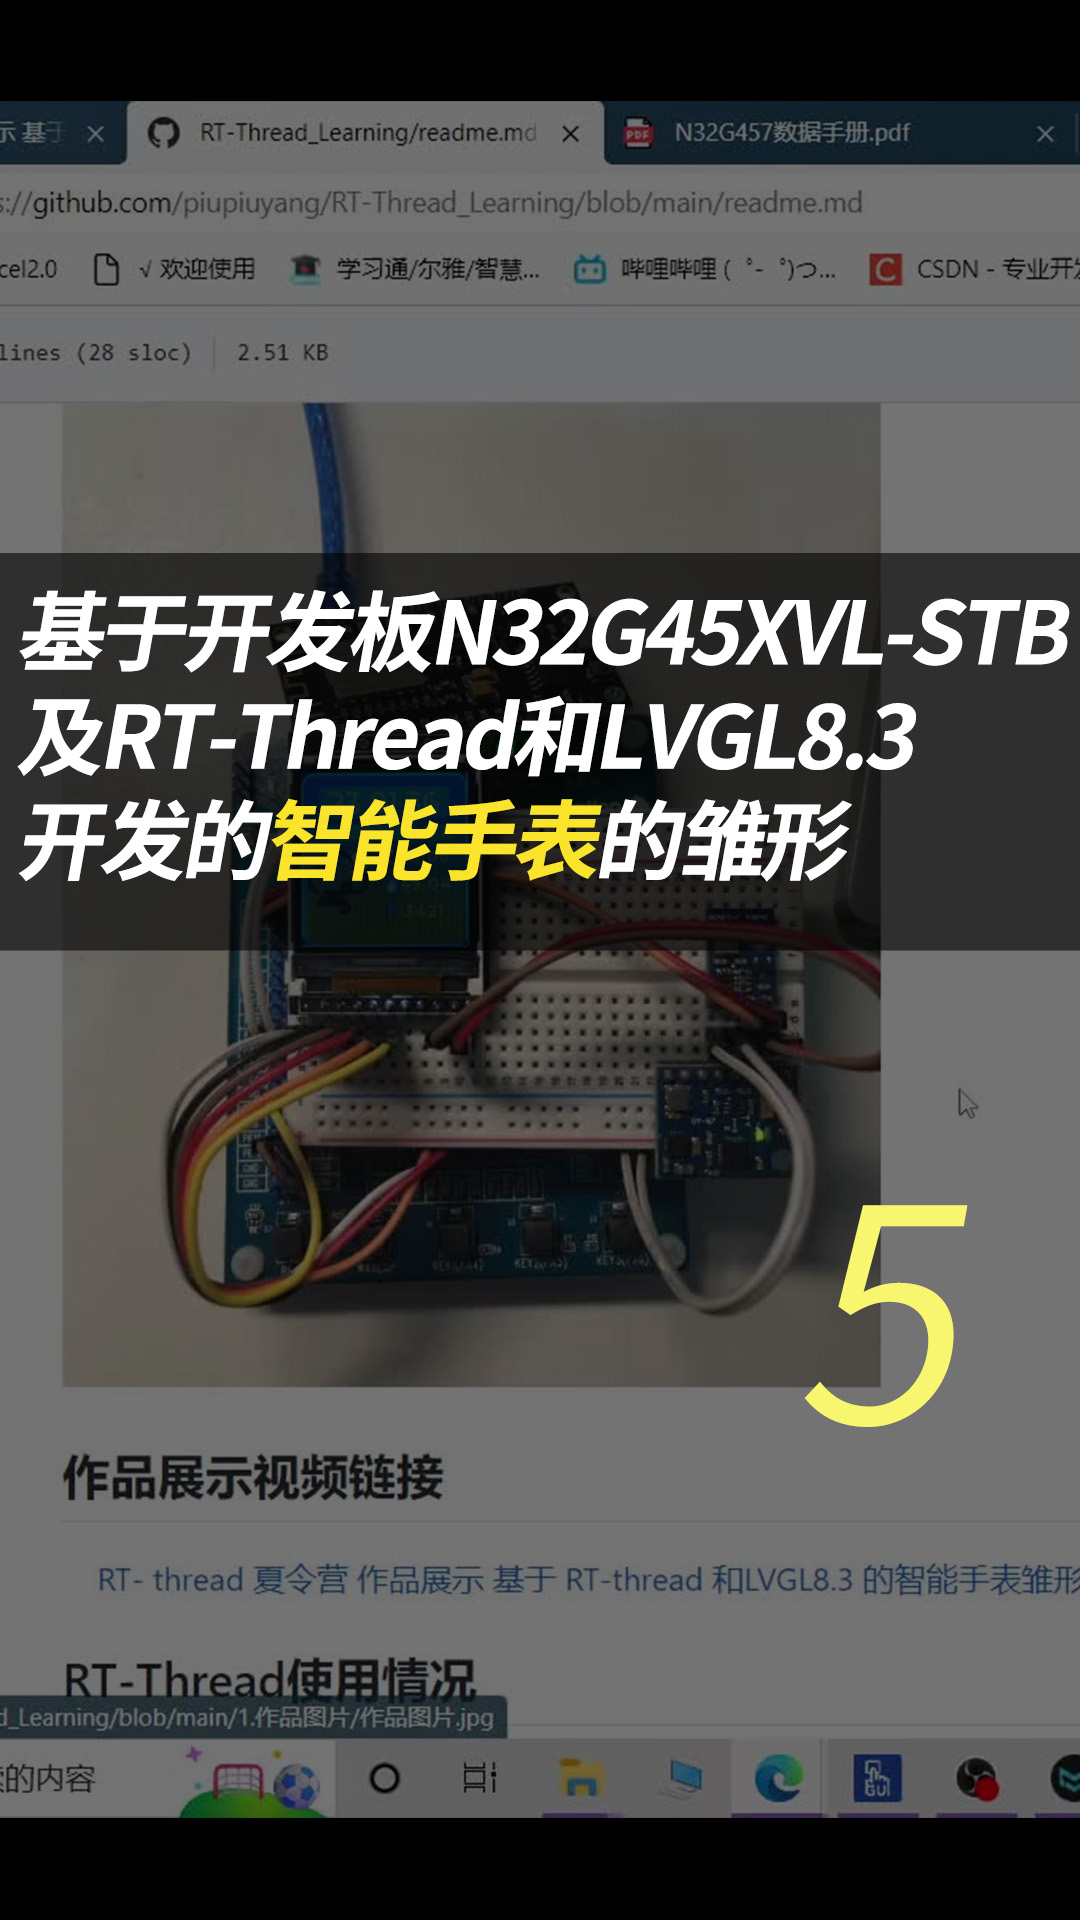 基于开发板N32G45XVL-STB及RT-Threa - 5-MPU6050软件包使用#RT-Thread 